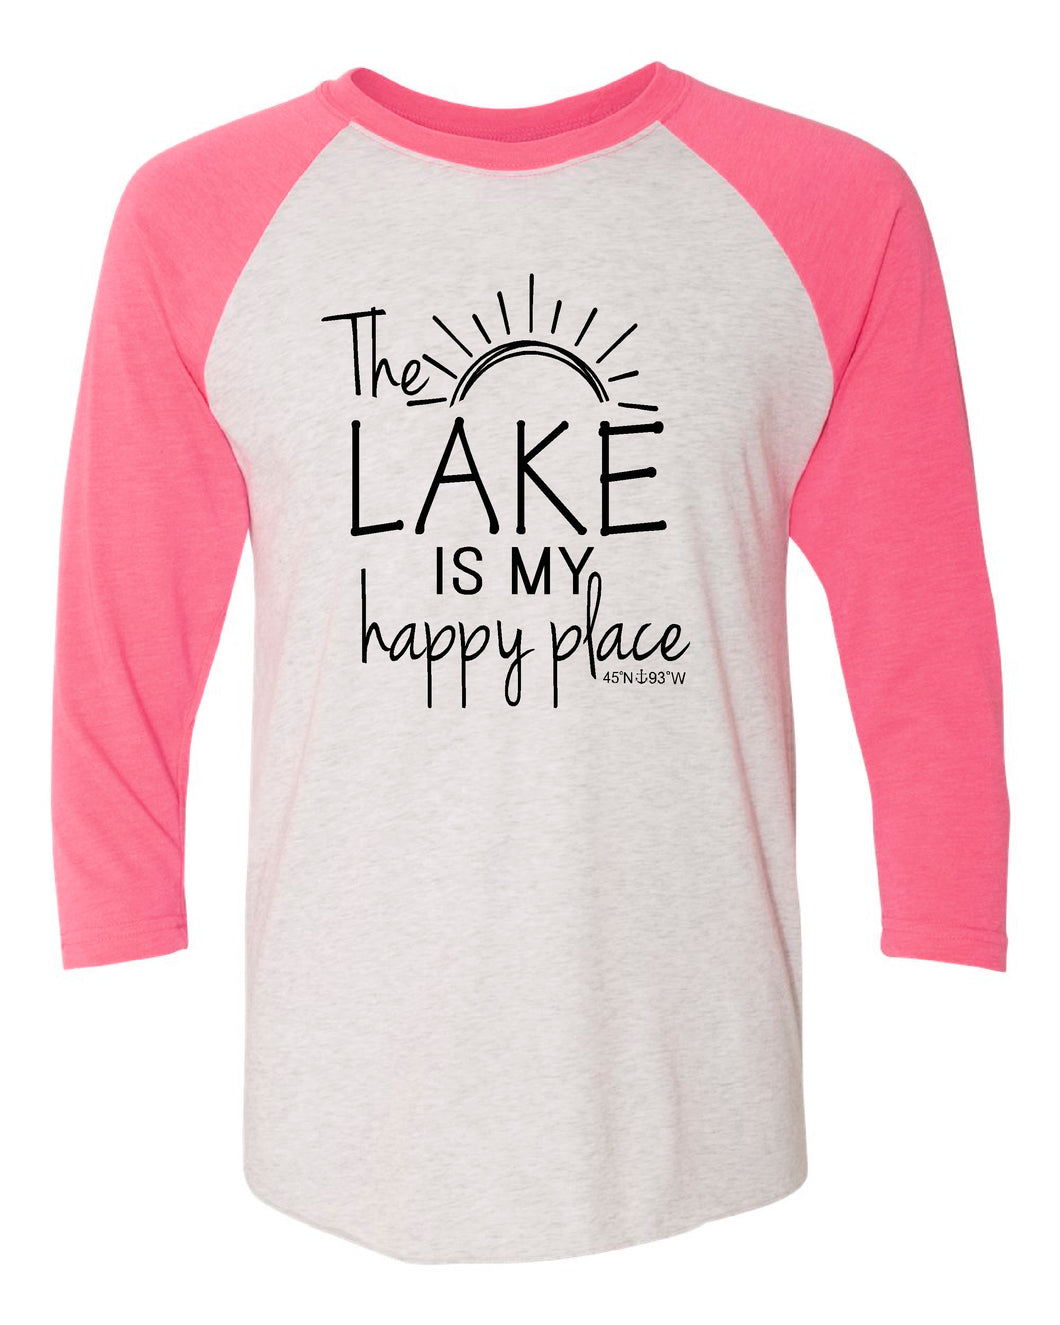 Lake Sarah or Lake Shetek Next Level Triblend Raglan - Happy Place